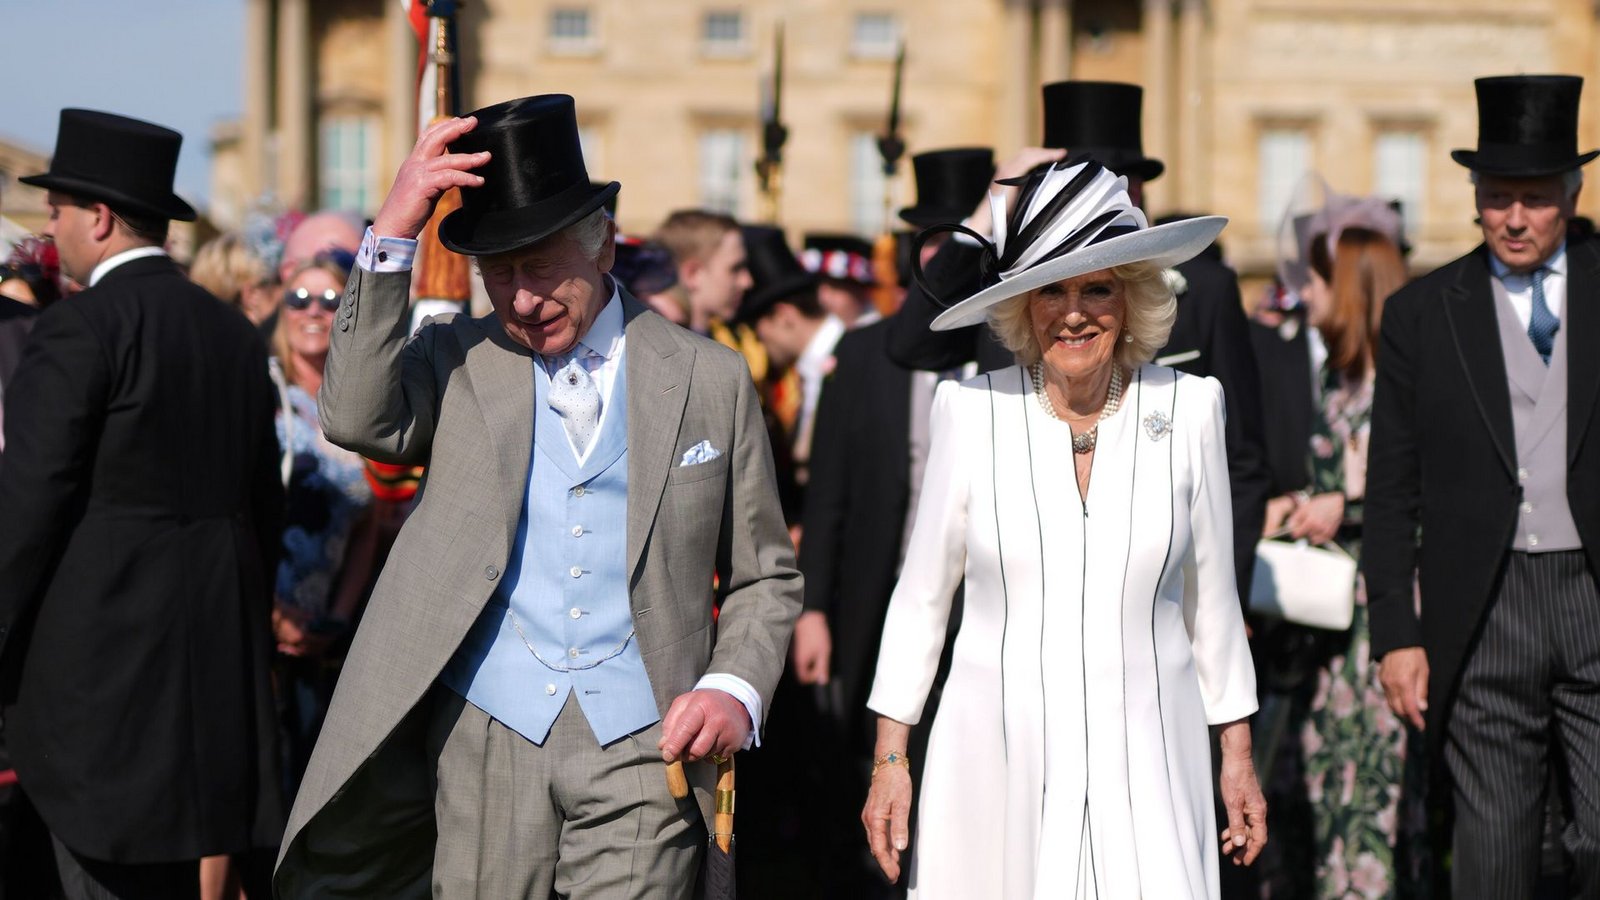 König Charles III. und Königin Camilla bei der königlichen Gartenparty im Buckingham-Palast.Foto: Jordan Pettitt/PA Wire/dpa